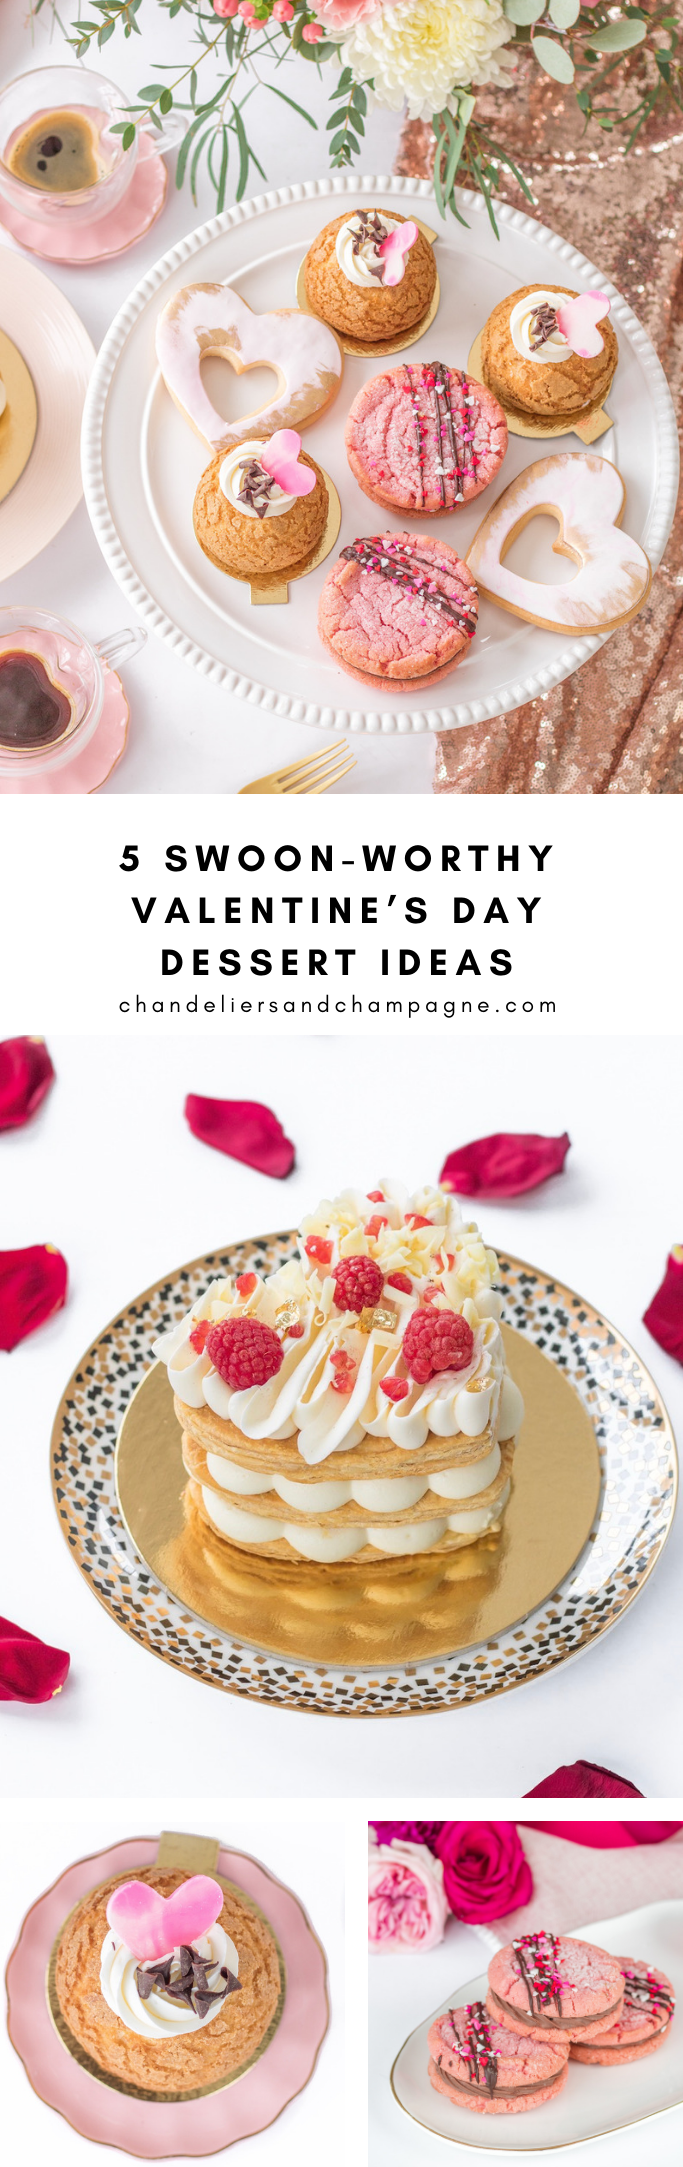 5 Valentine's Day dessert ideas